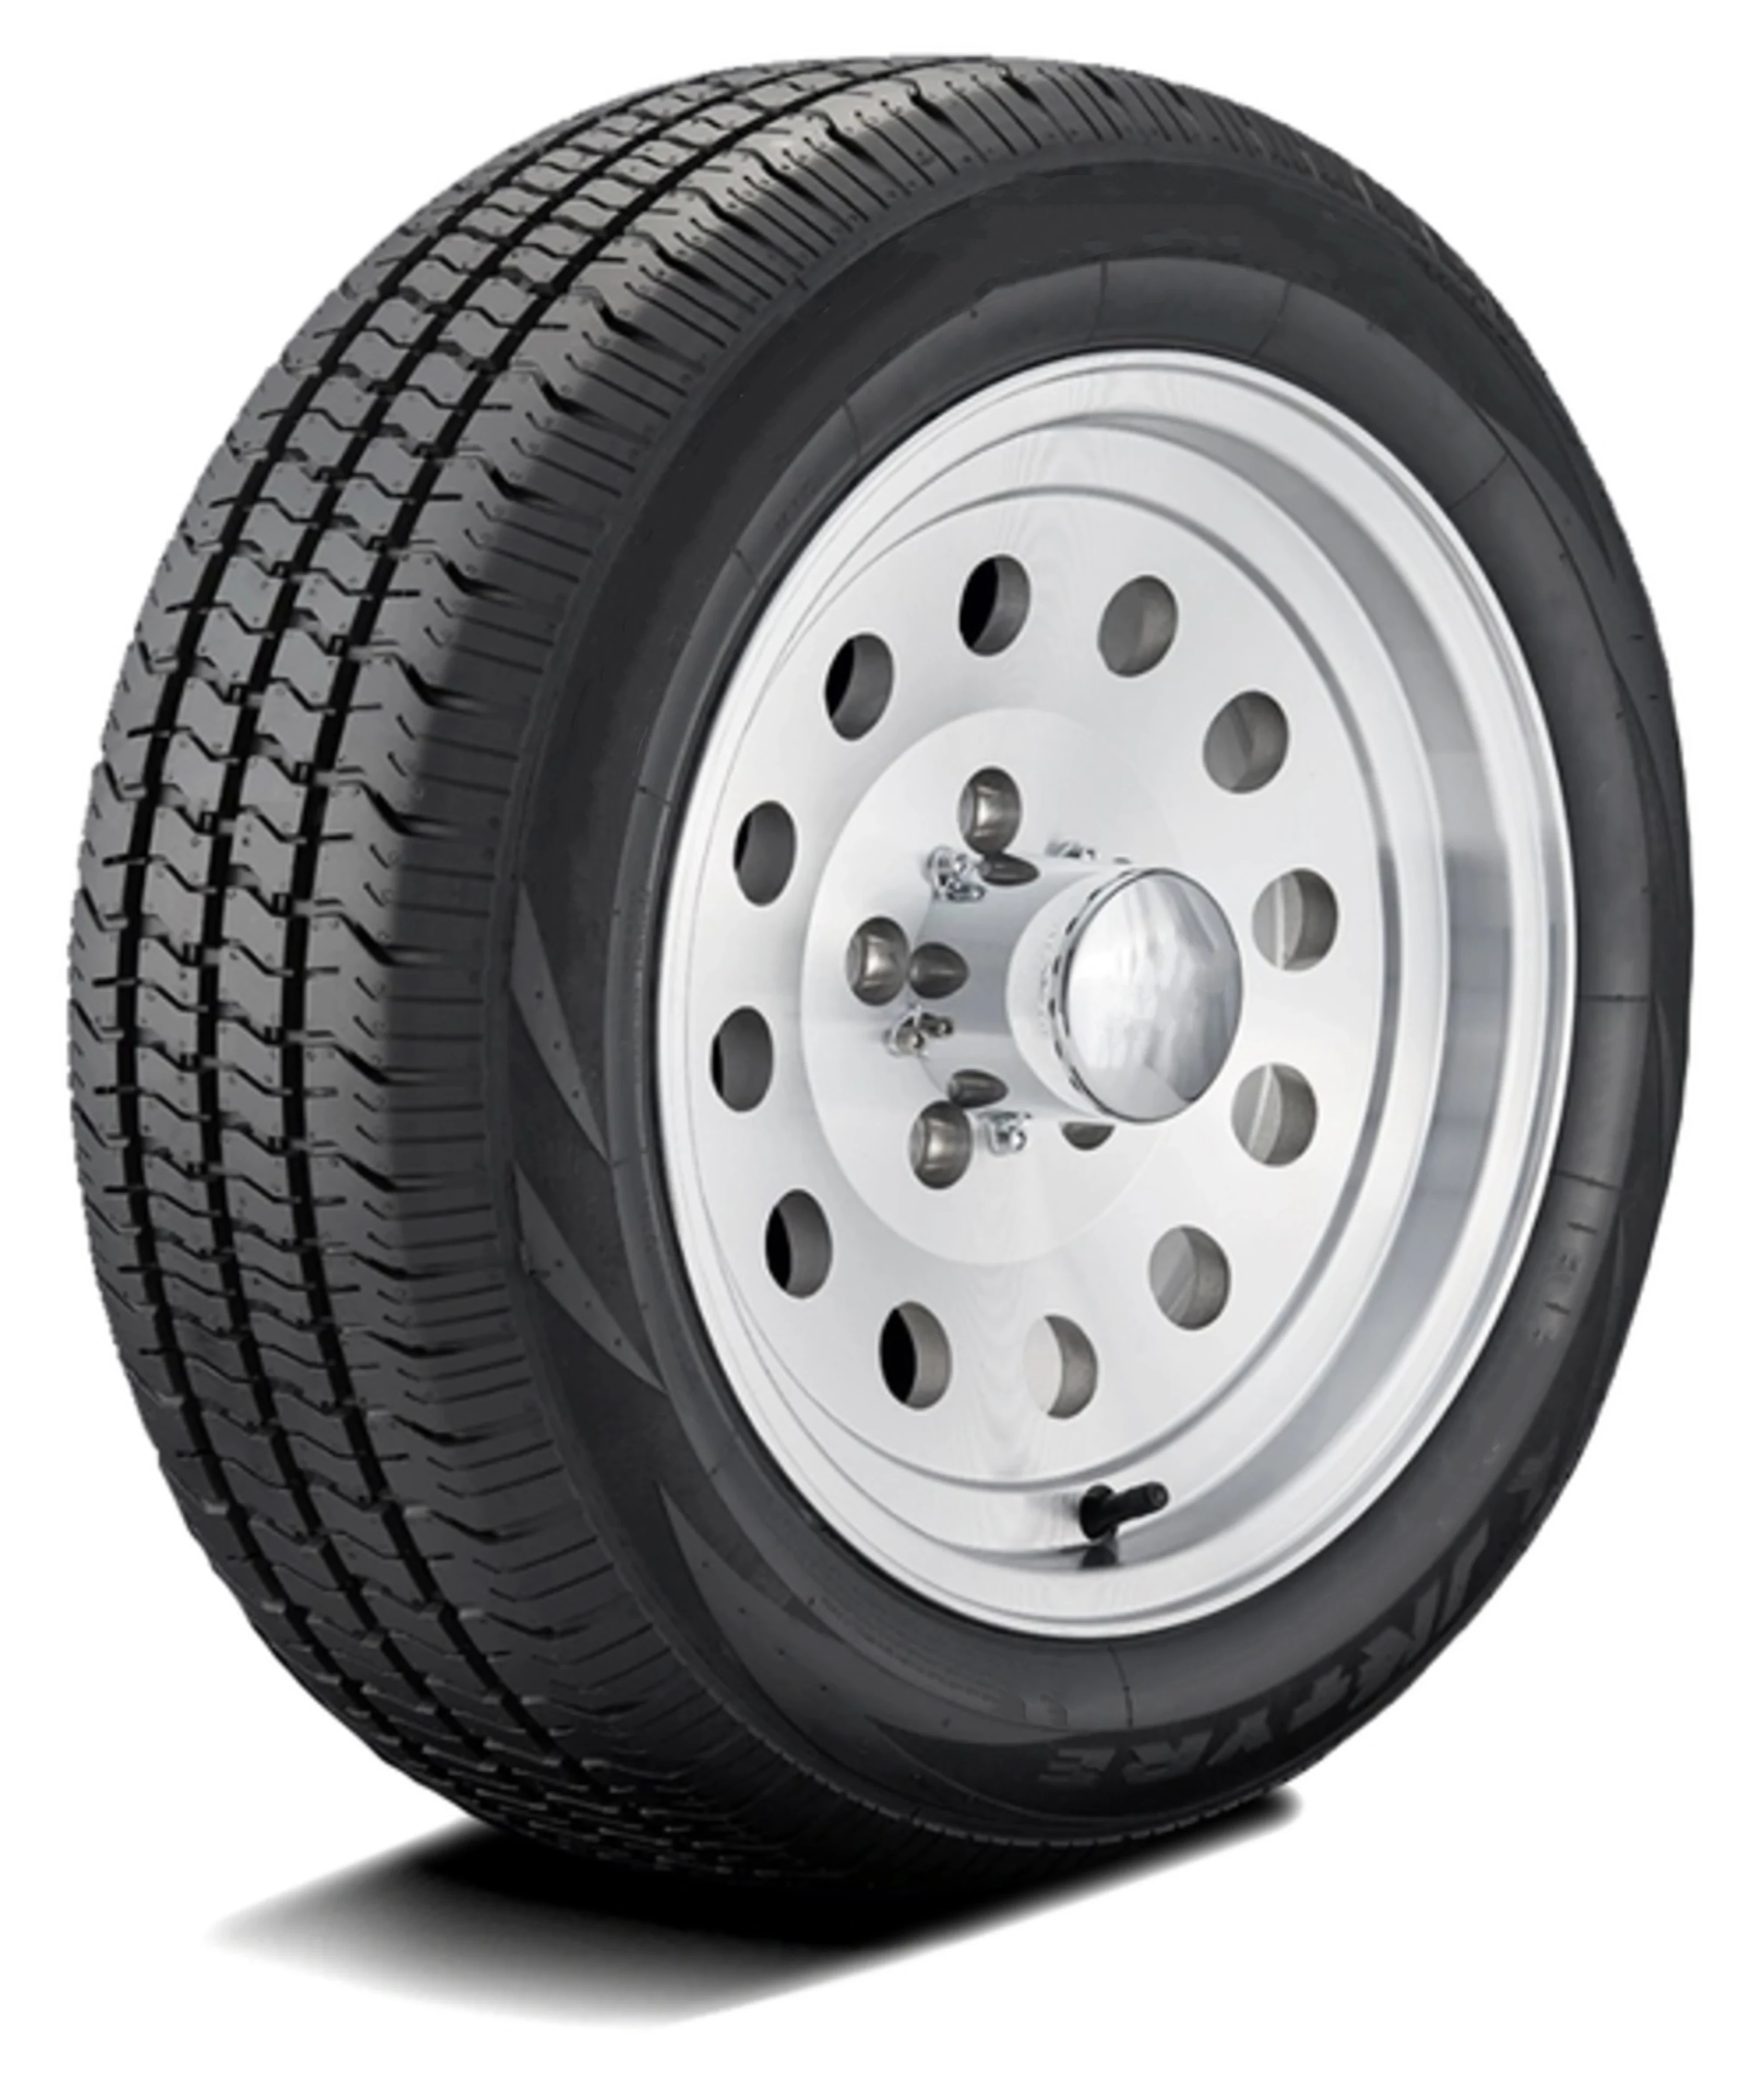 Order ZELLERON VANECONO 195R15C Commercial Van Tires Online